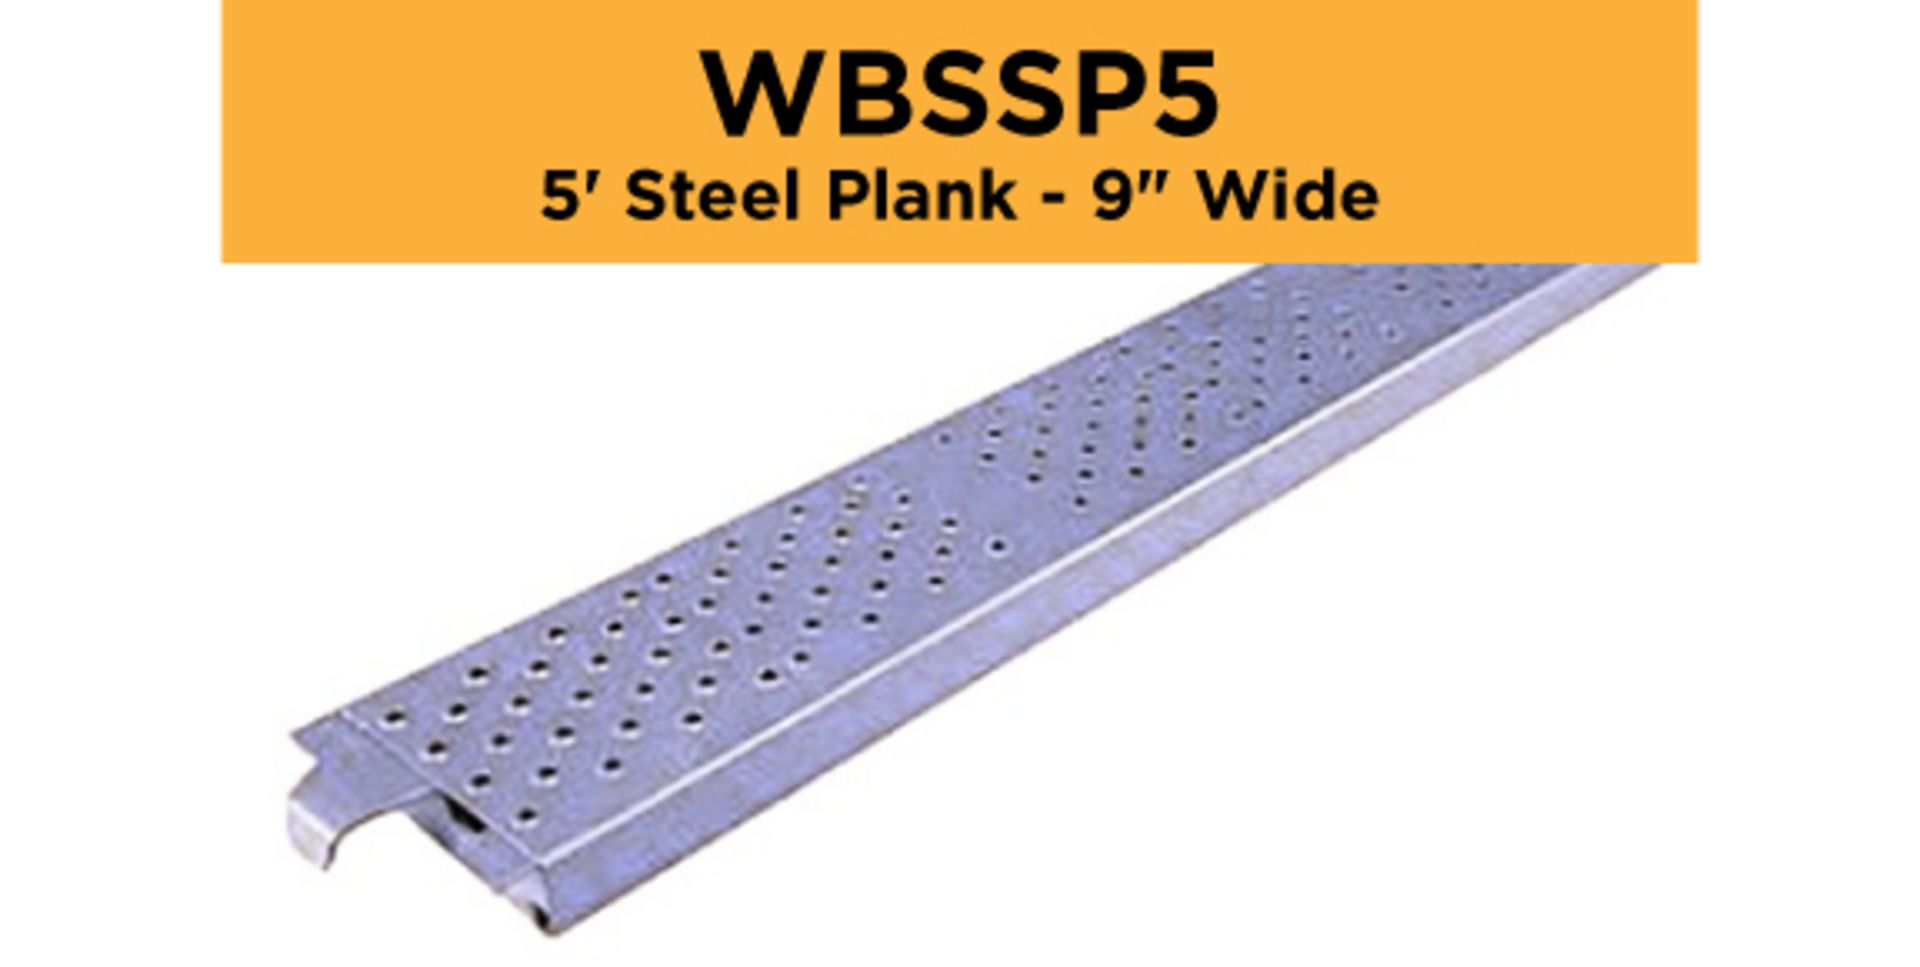 Lot of (256) 5' Steel Plank - 9" Wide - Bay Length 60" (1.52M); Type: WBSSP5 - (4) Racks Per Lot -